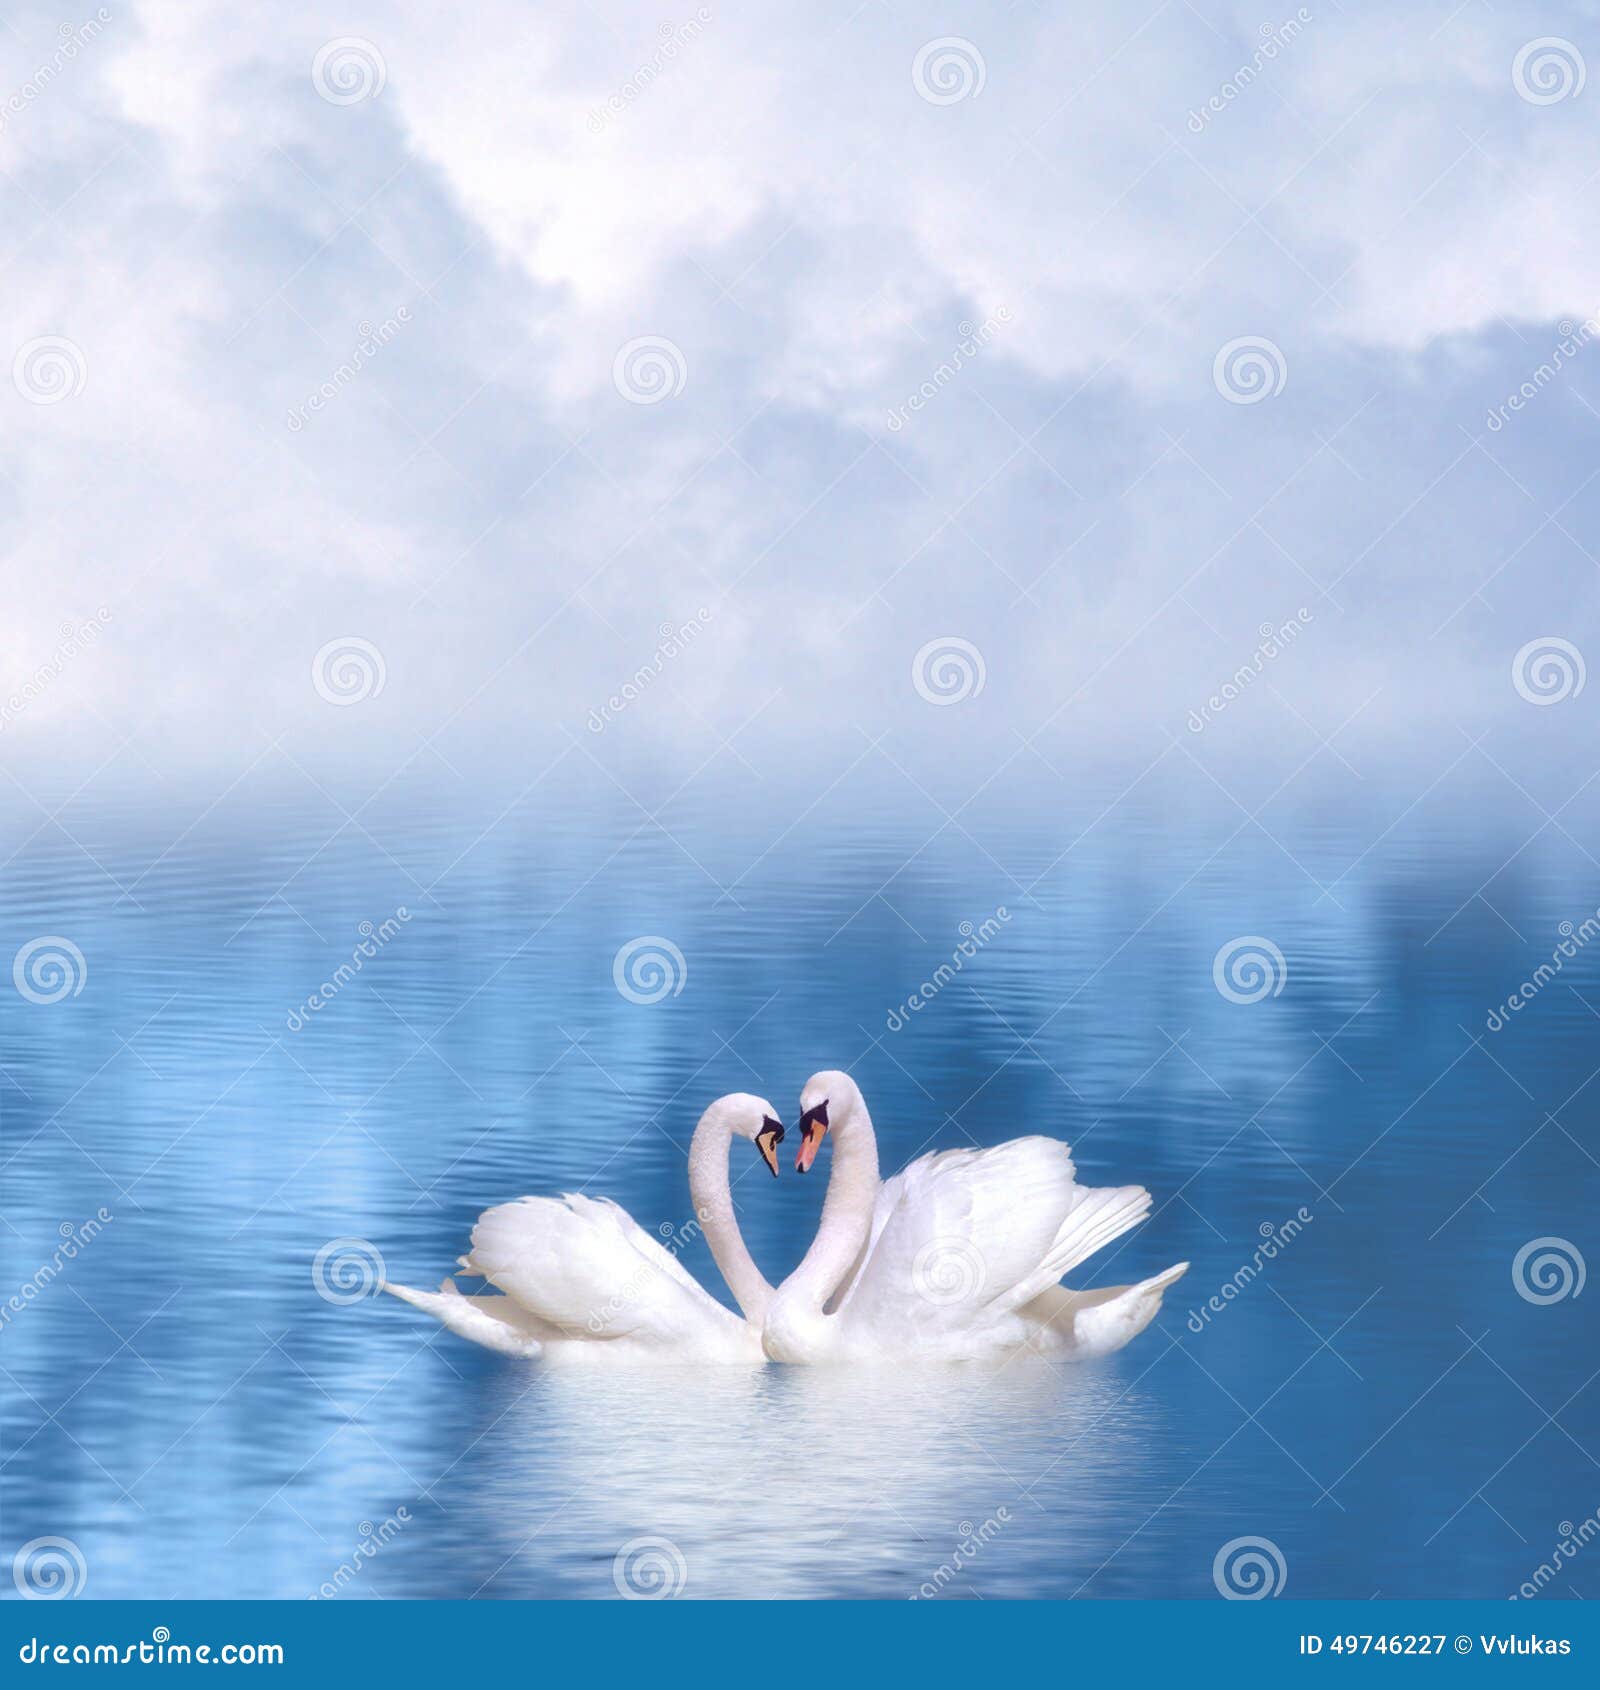 graceful swans in love